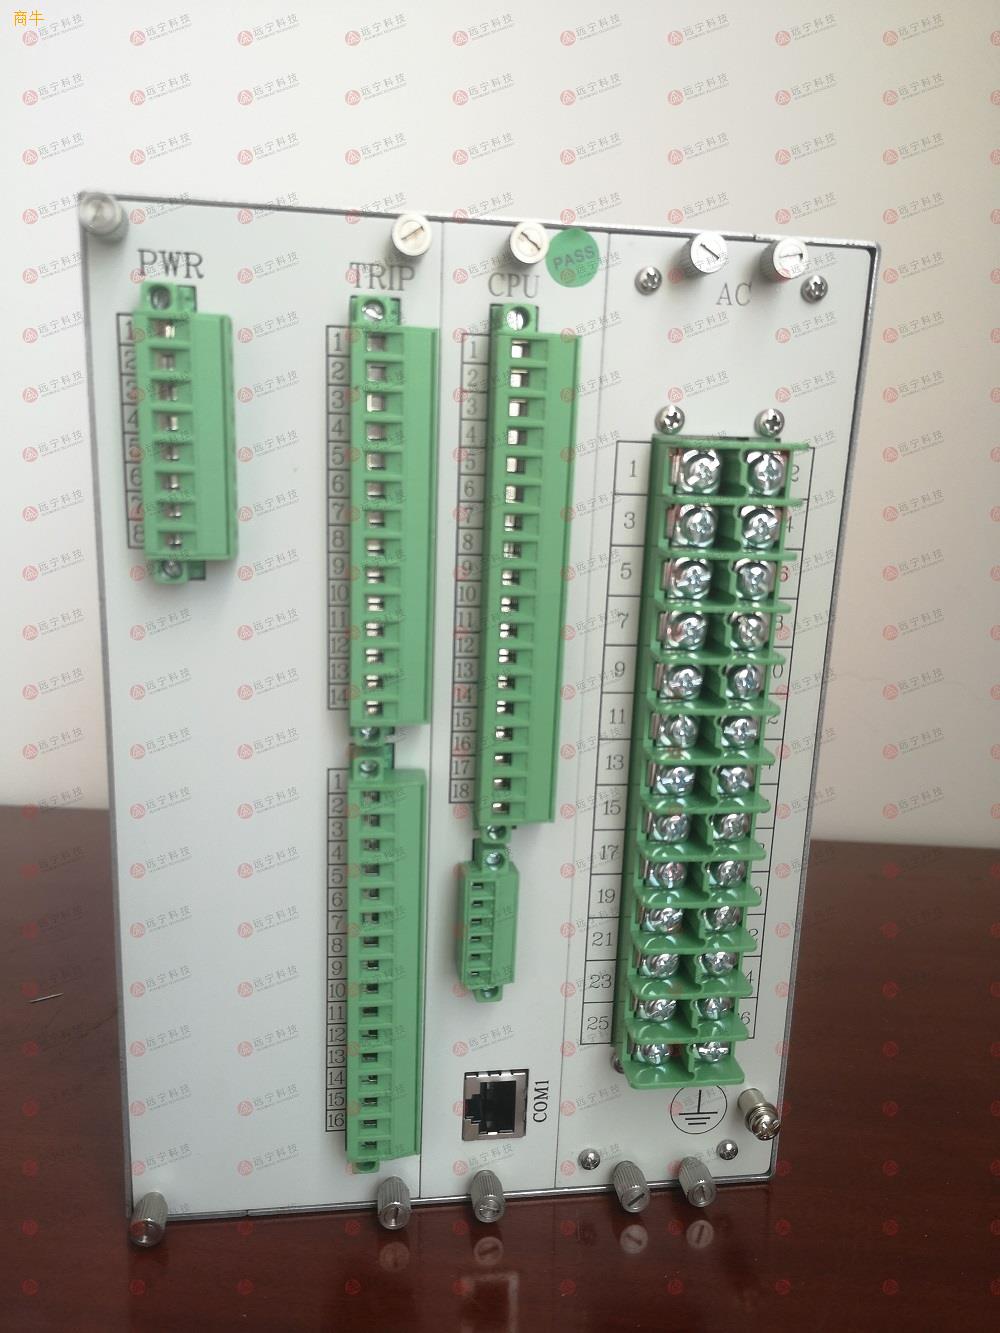 国电南自PST645UX变压器保护测控装置